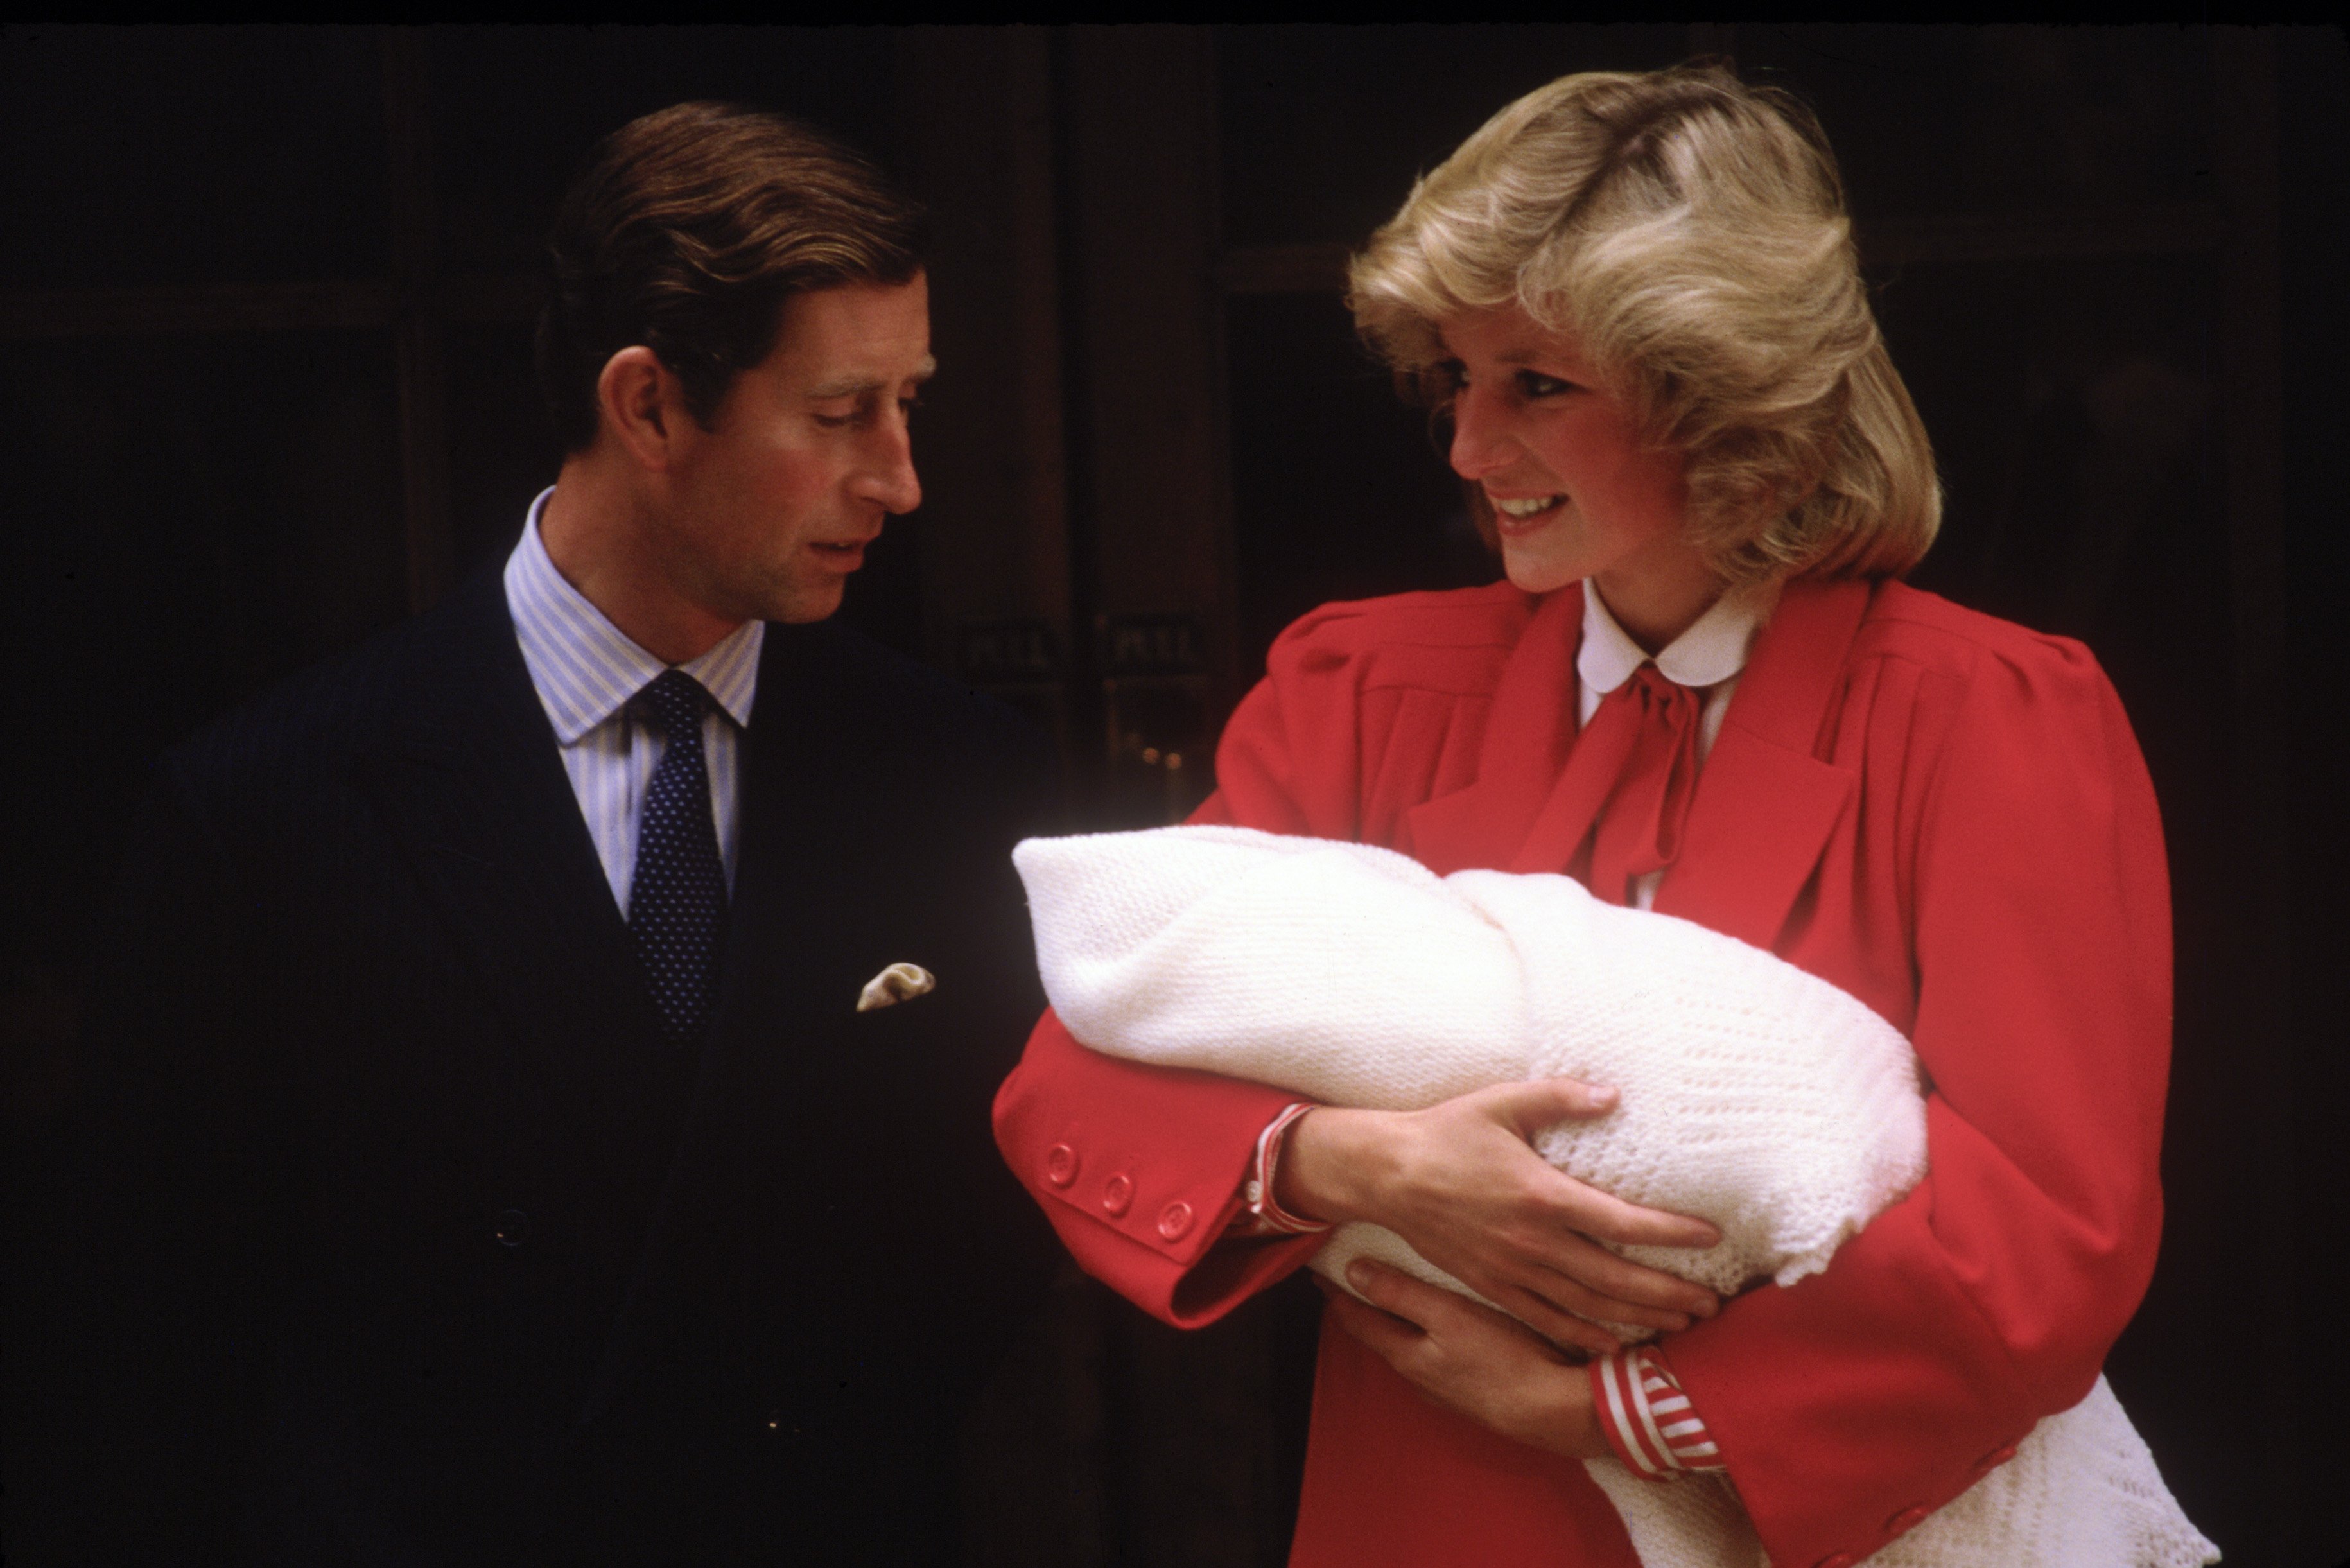 La princesa Diana y el príncipe Charles con el recién nacido príncipe Harry, el 16 de septiembre de 1984 en Paddington, Londres. | Foto: Getty Images